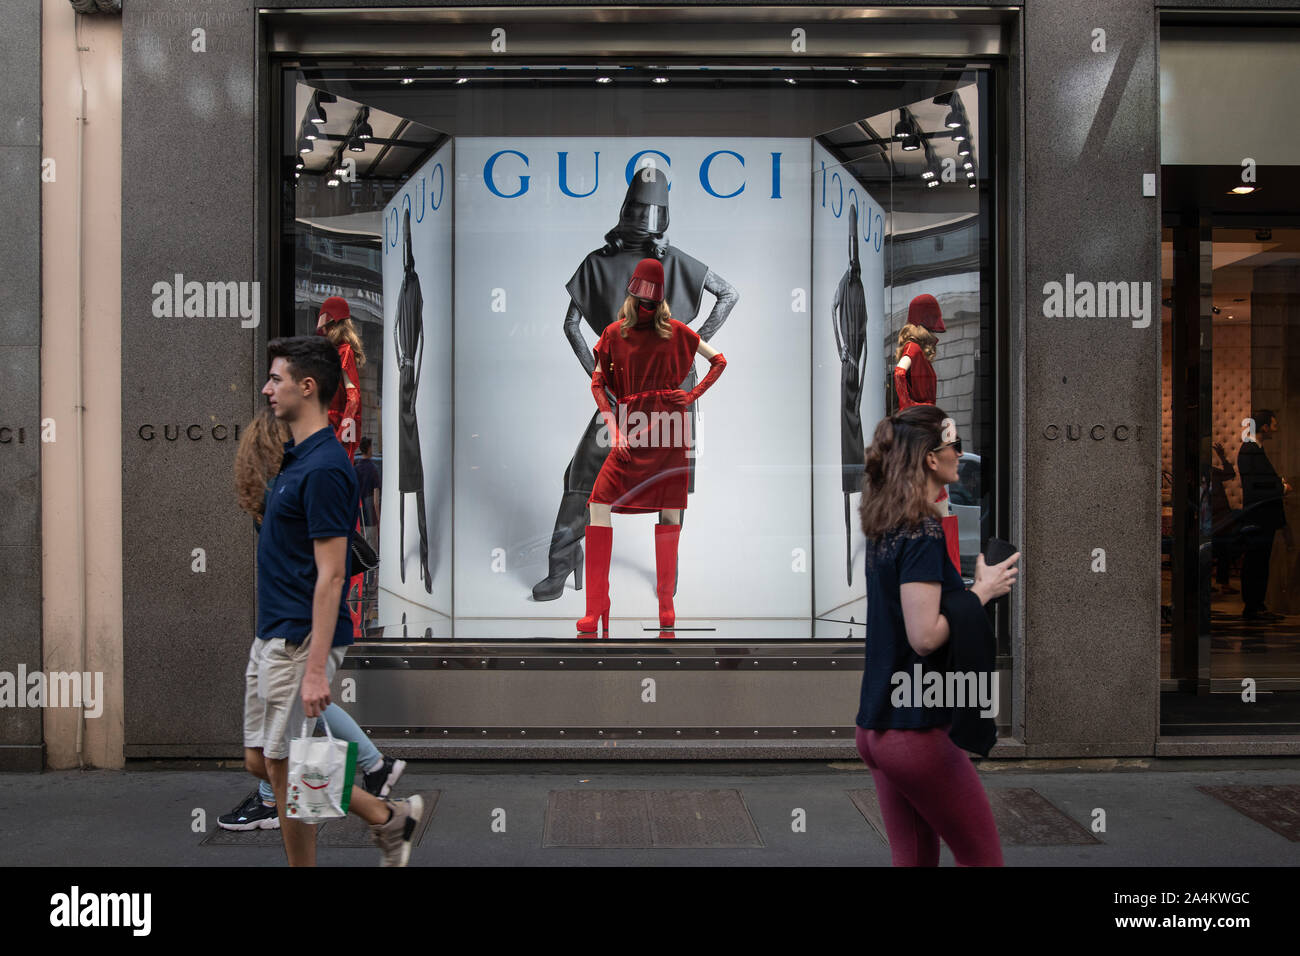 Saldi Gucci 2019 | ccelrecreo.com